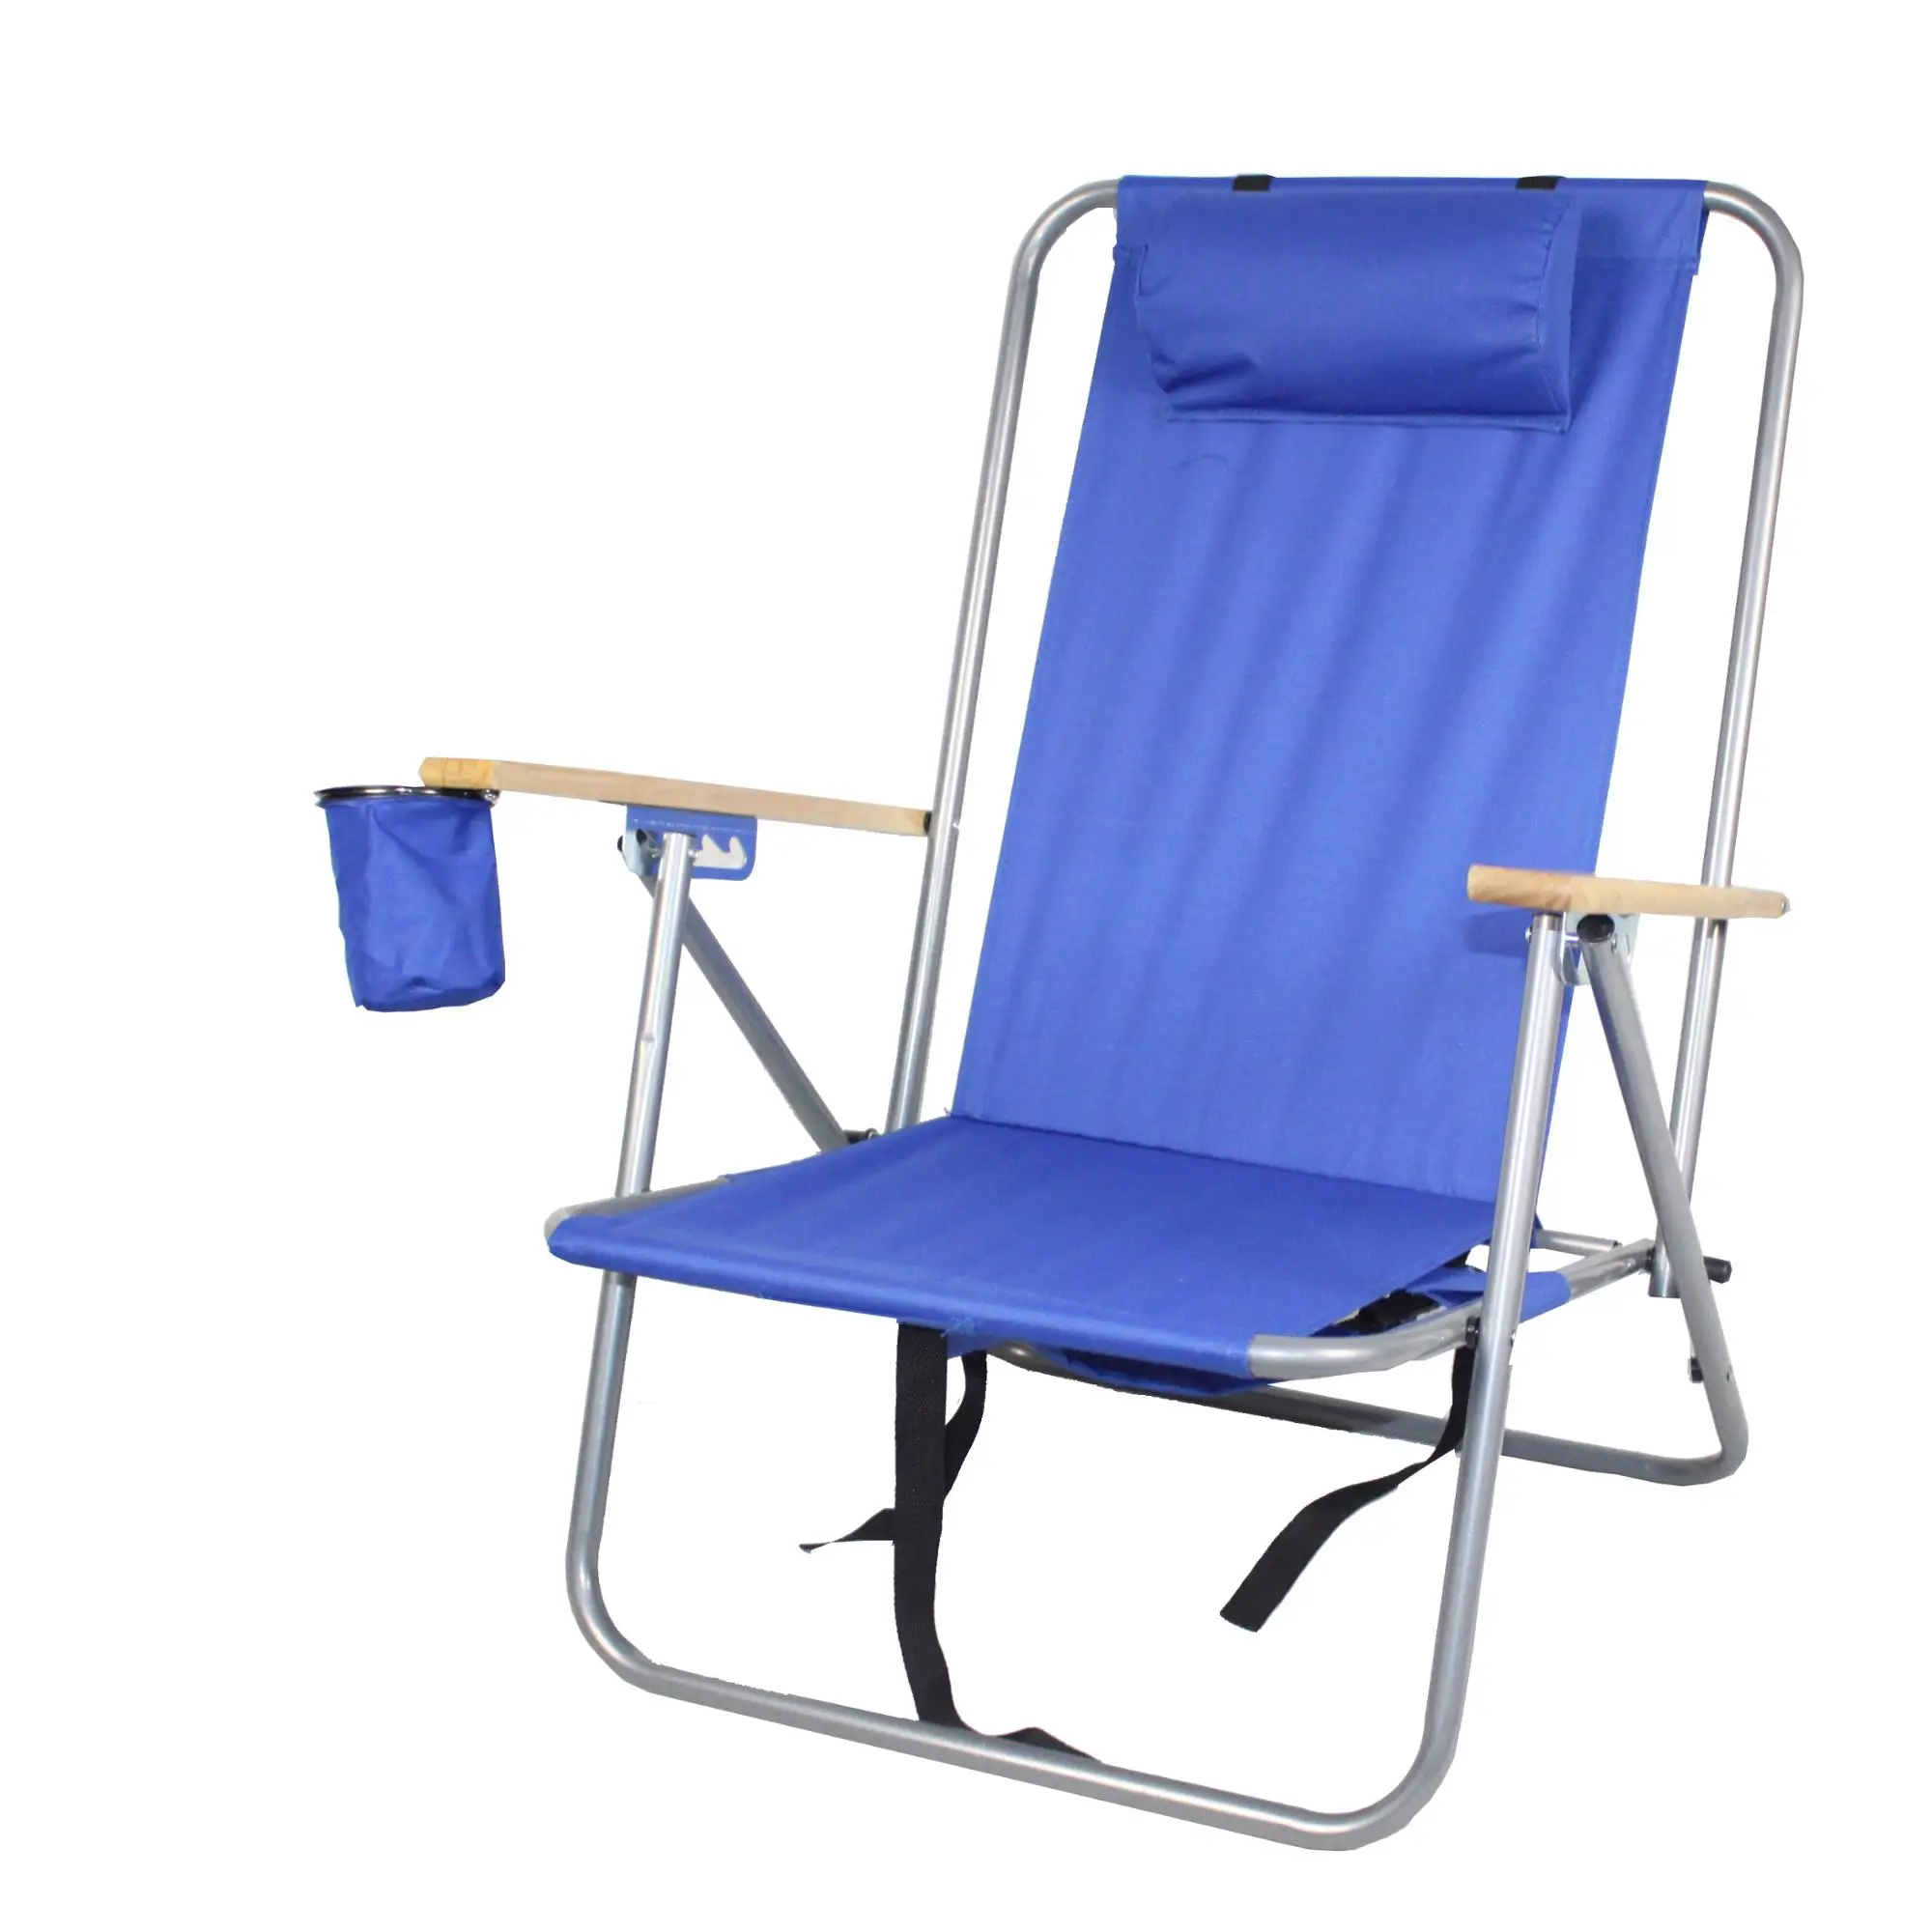 Unique Aluminium Beach Chair Uk for Living room